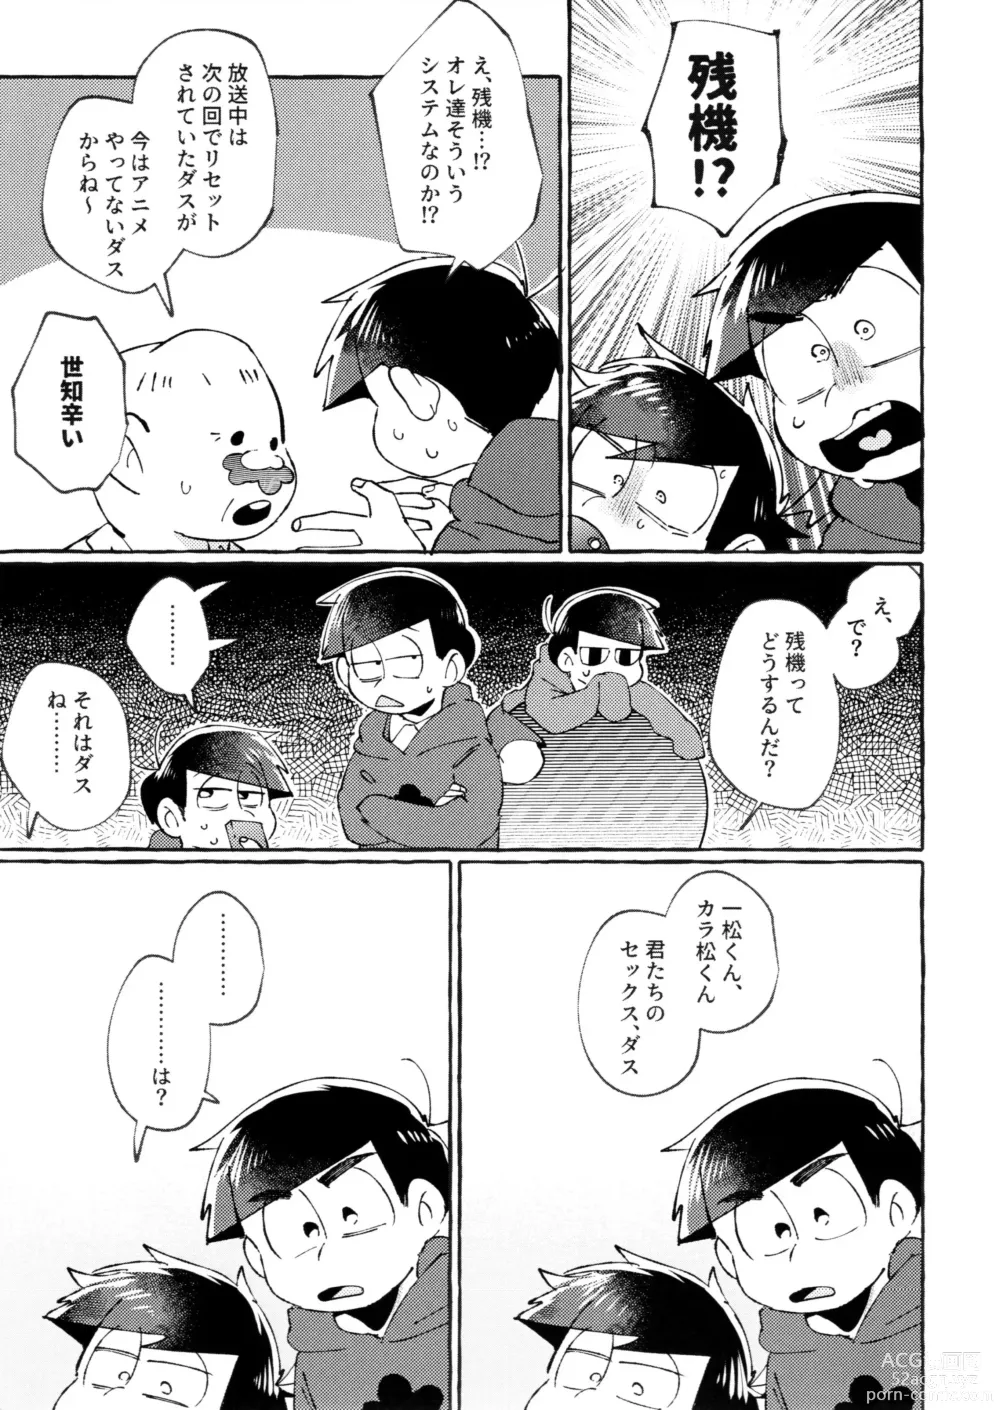 Page 7 of doujinshi sekai o sukueru no wa ore-tachi no ×××!